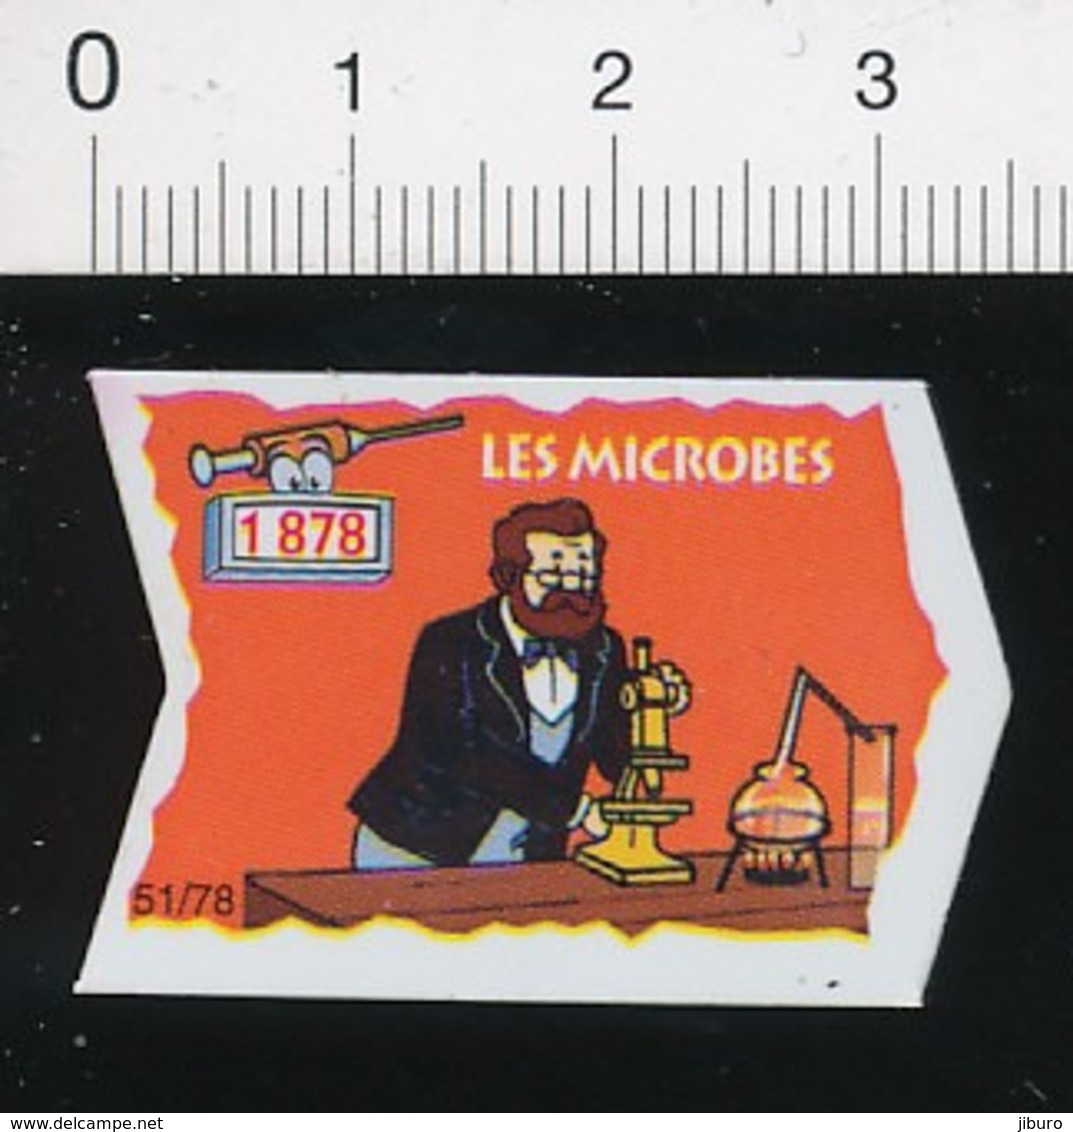 Magnet Le Gaulois 51/78 (Les Découvreurs) Découverte Des Microbes En 1878 ( Louis Pasteur) Microscope 01-mag1 - Magnets